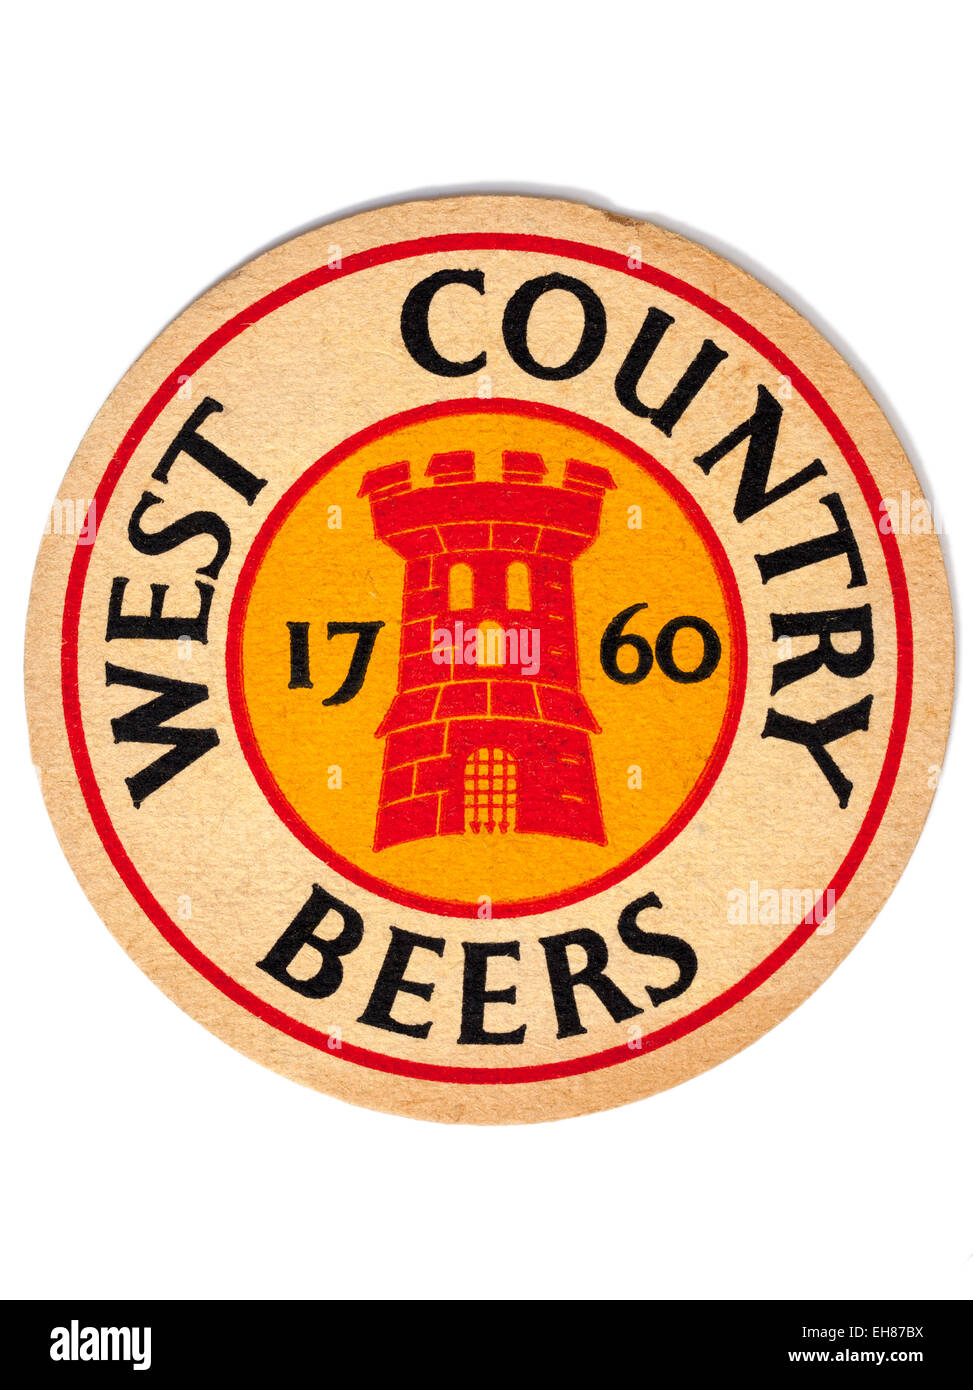 Vintage Beermat Advertising West Country Beers Stock Photo